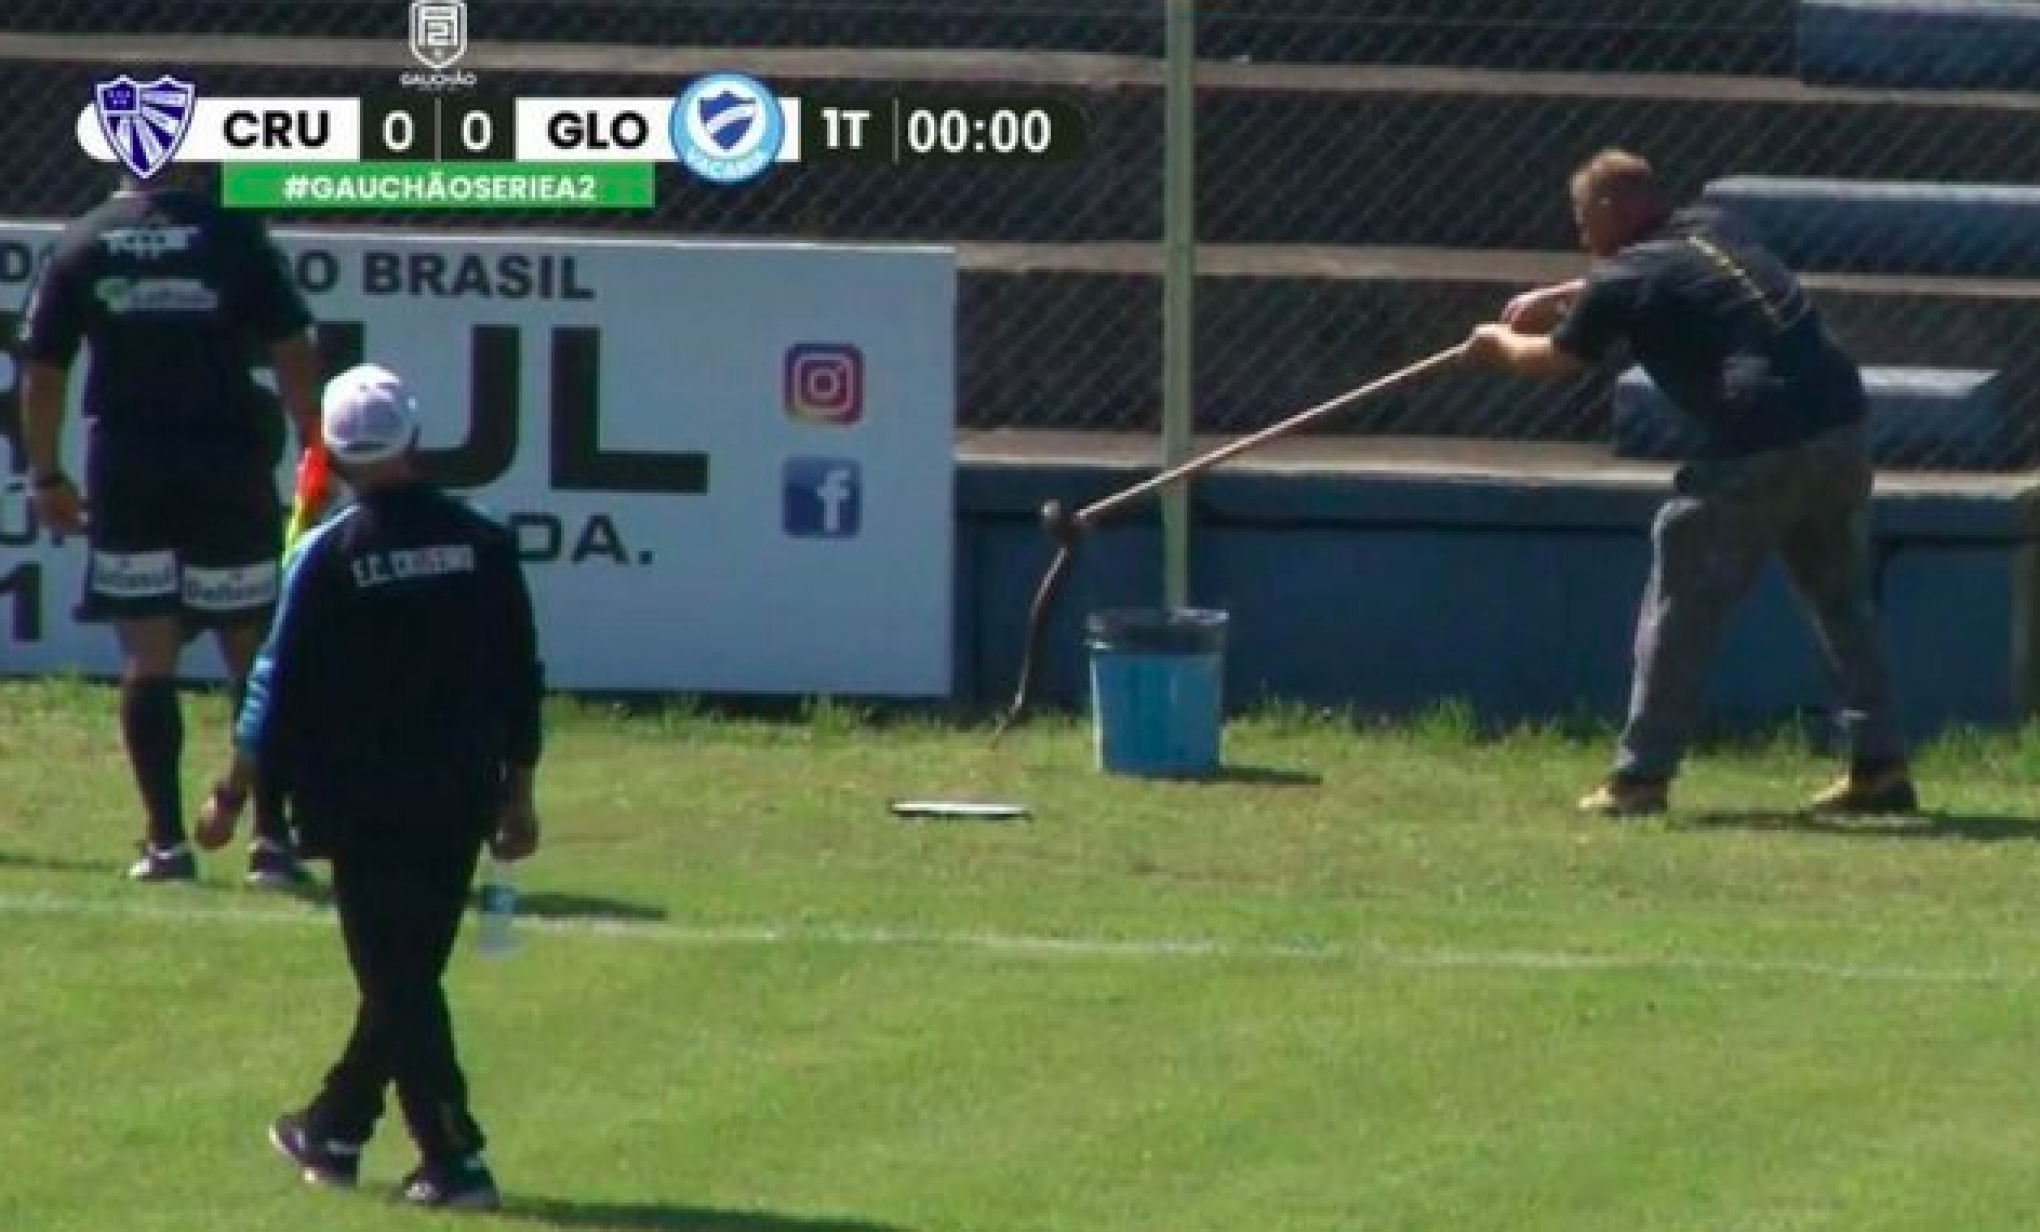 Cobra é capturada no gramado antes de jogo do Cruzeiro em Cachoeirinha -  Cachoeirinha - Diário de Canoas